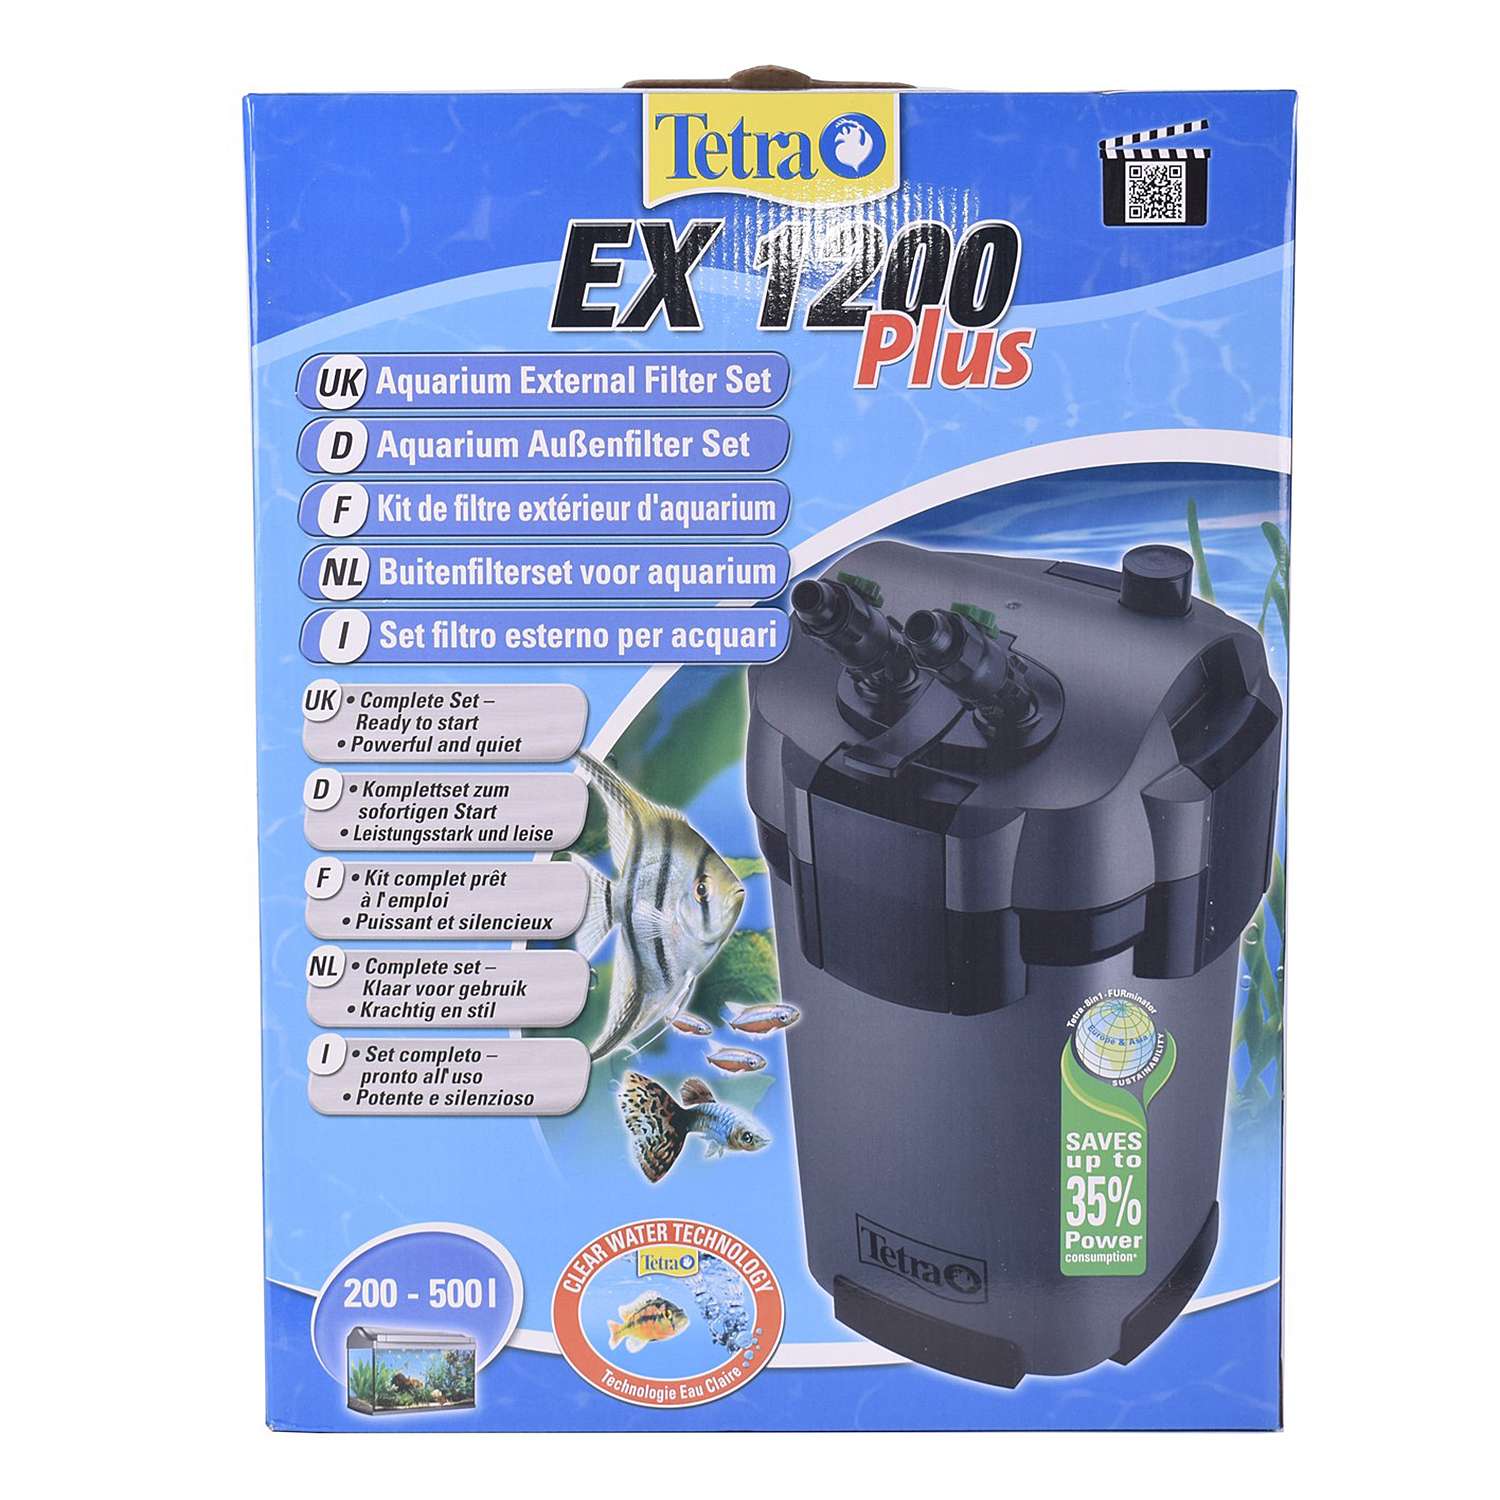 Фильтр для аквариумов Tetra EX 1200 Plus внешний 200-500л - фото 2